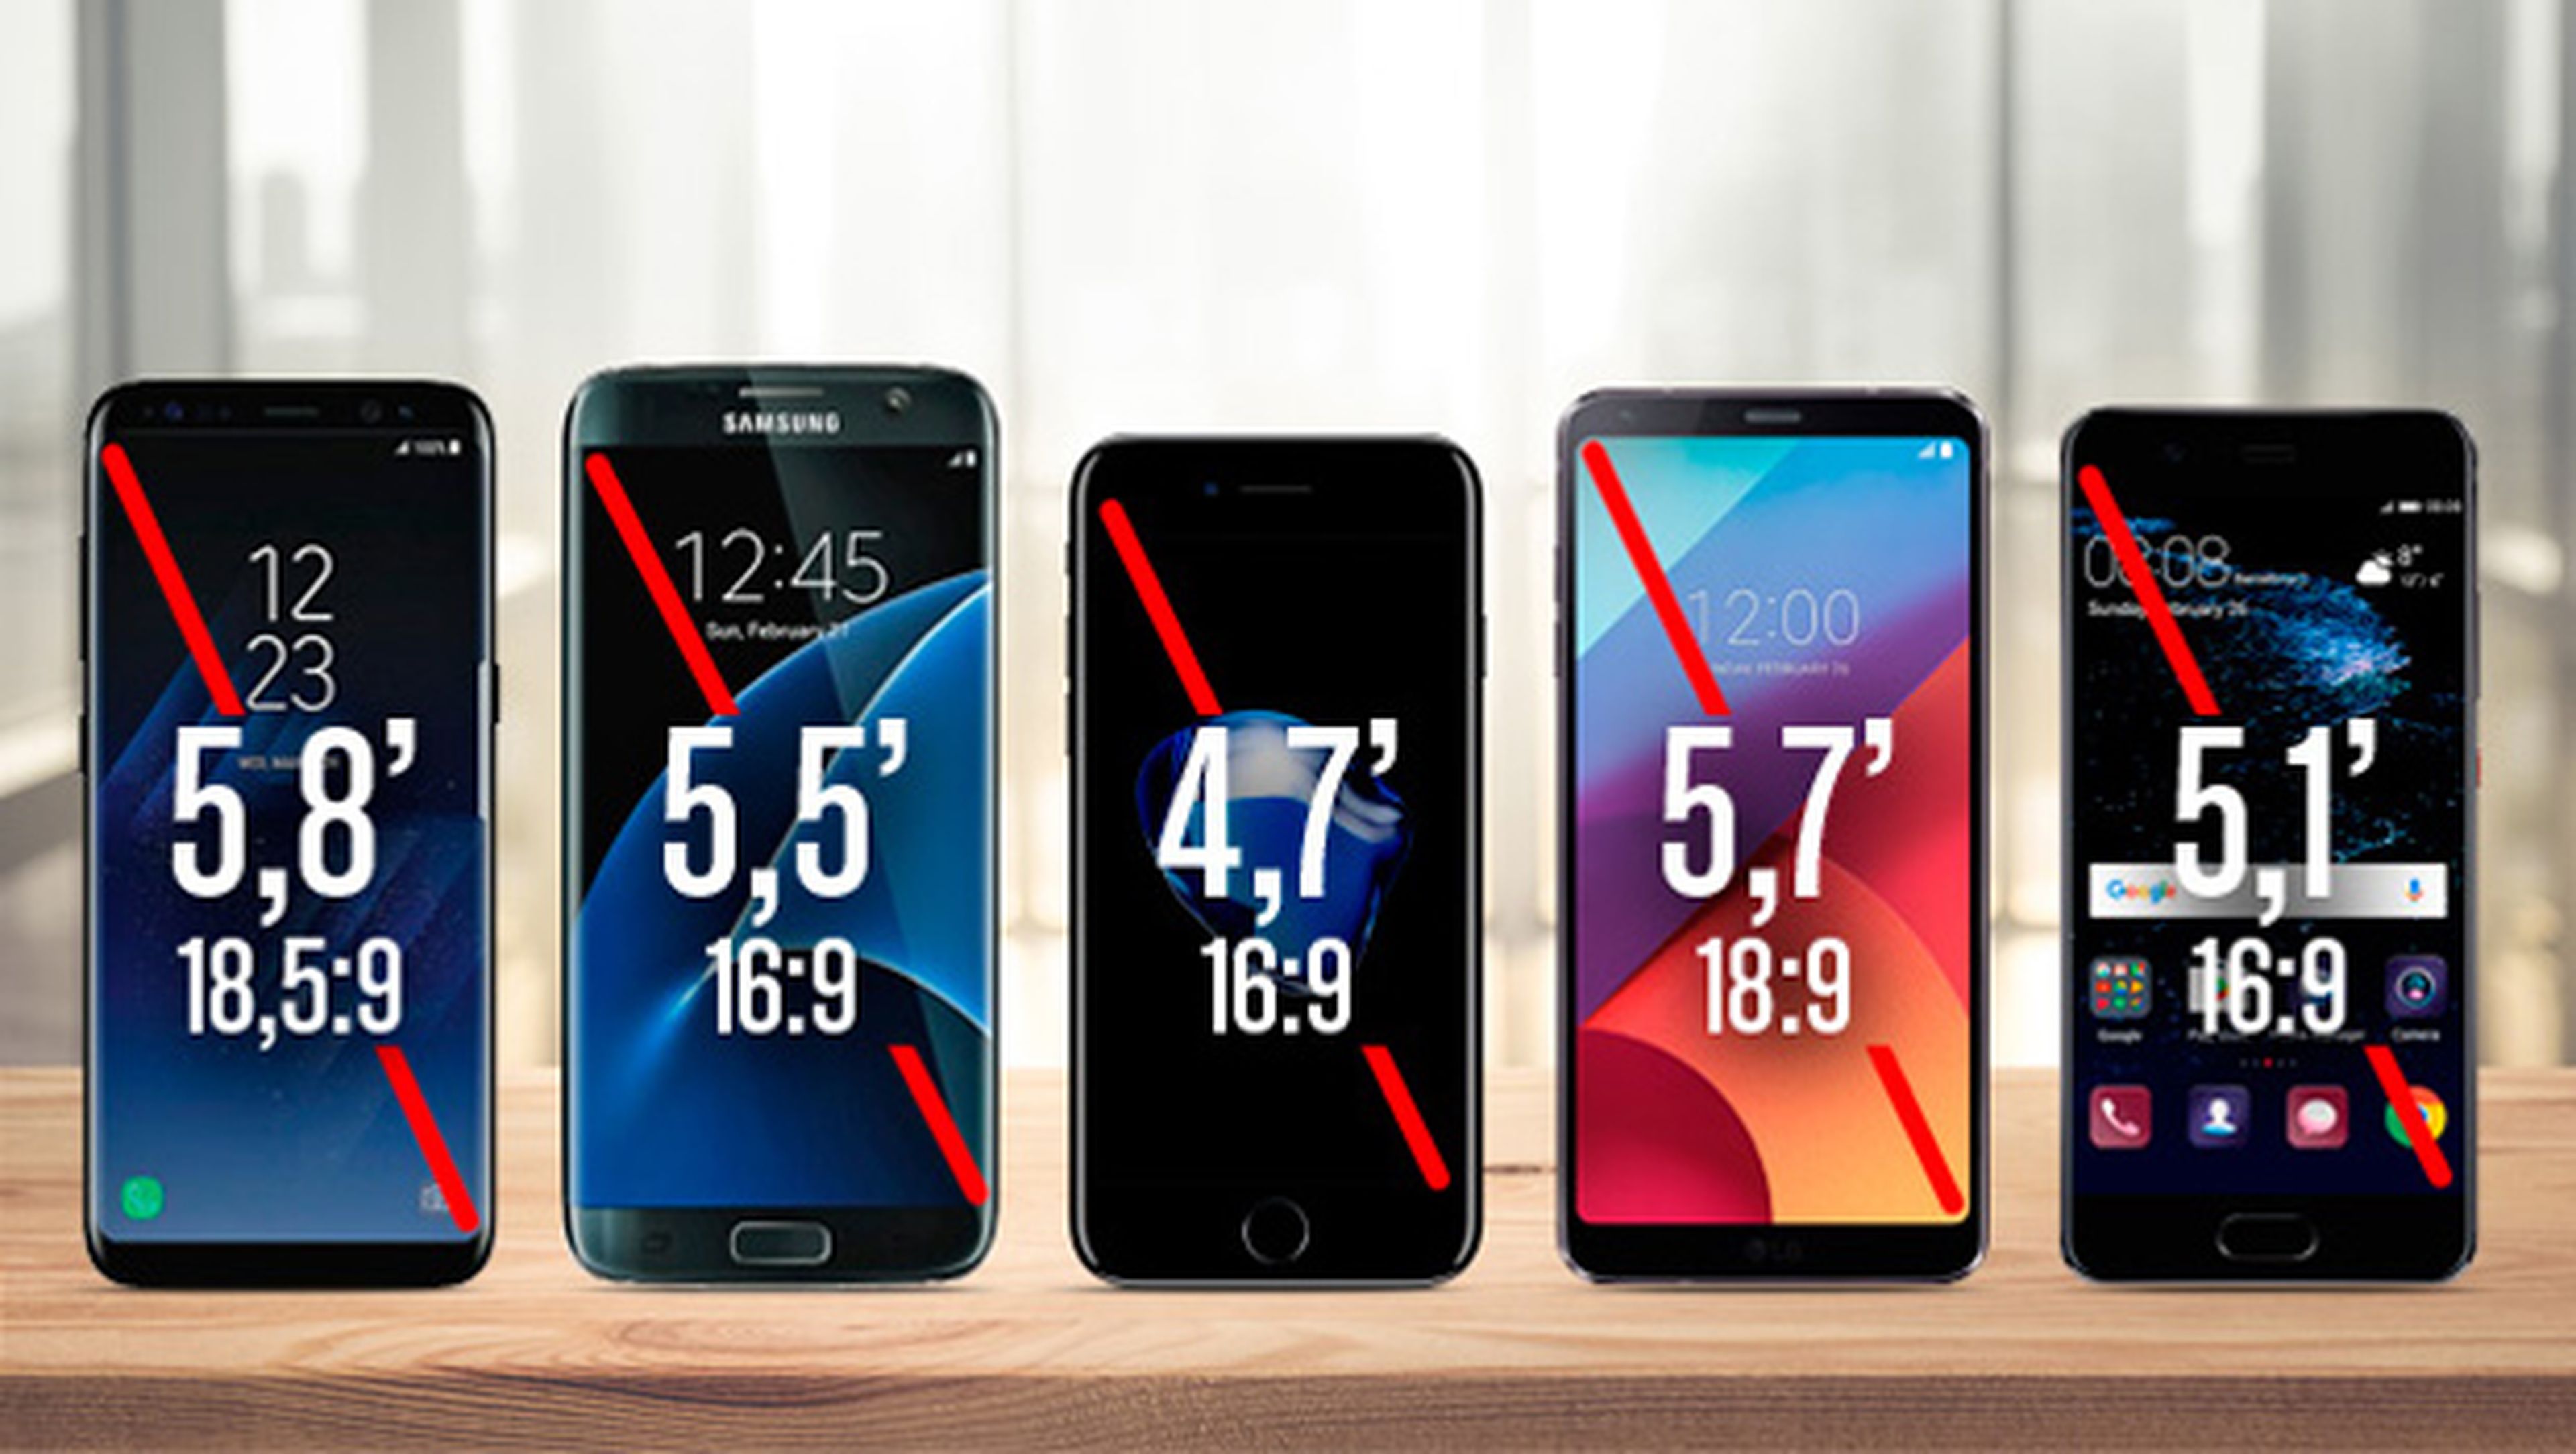 Comparativa de tamaños de pantalla y dimensiones frente al Galaxy S8